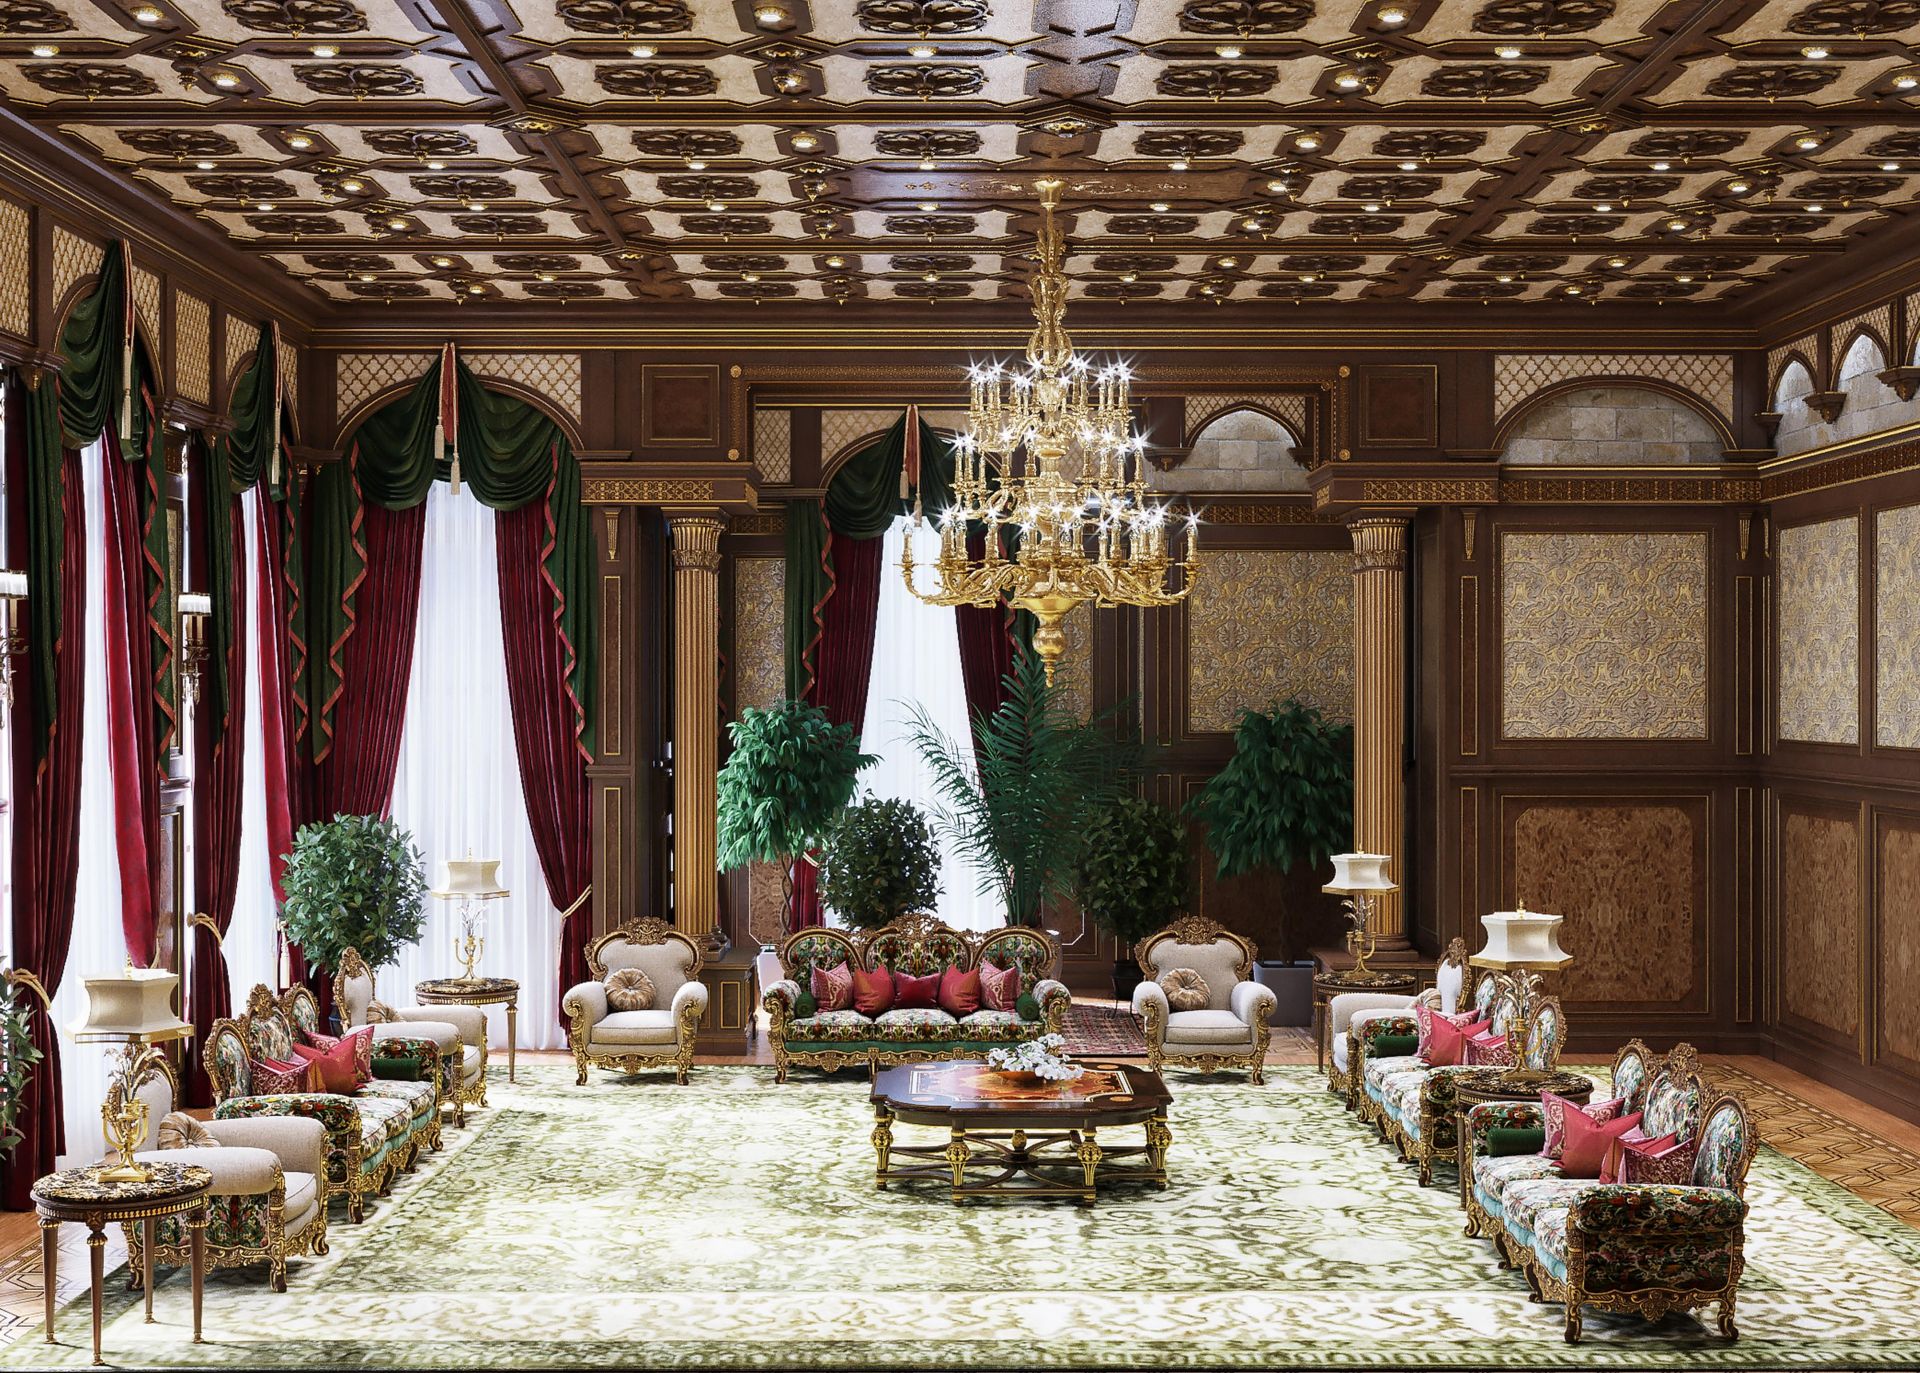 Classical interior design